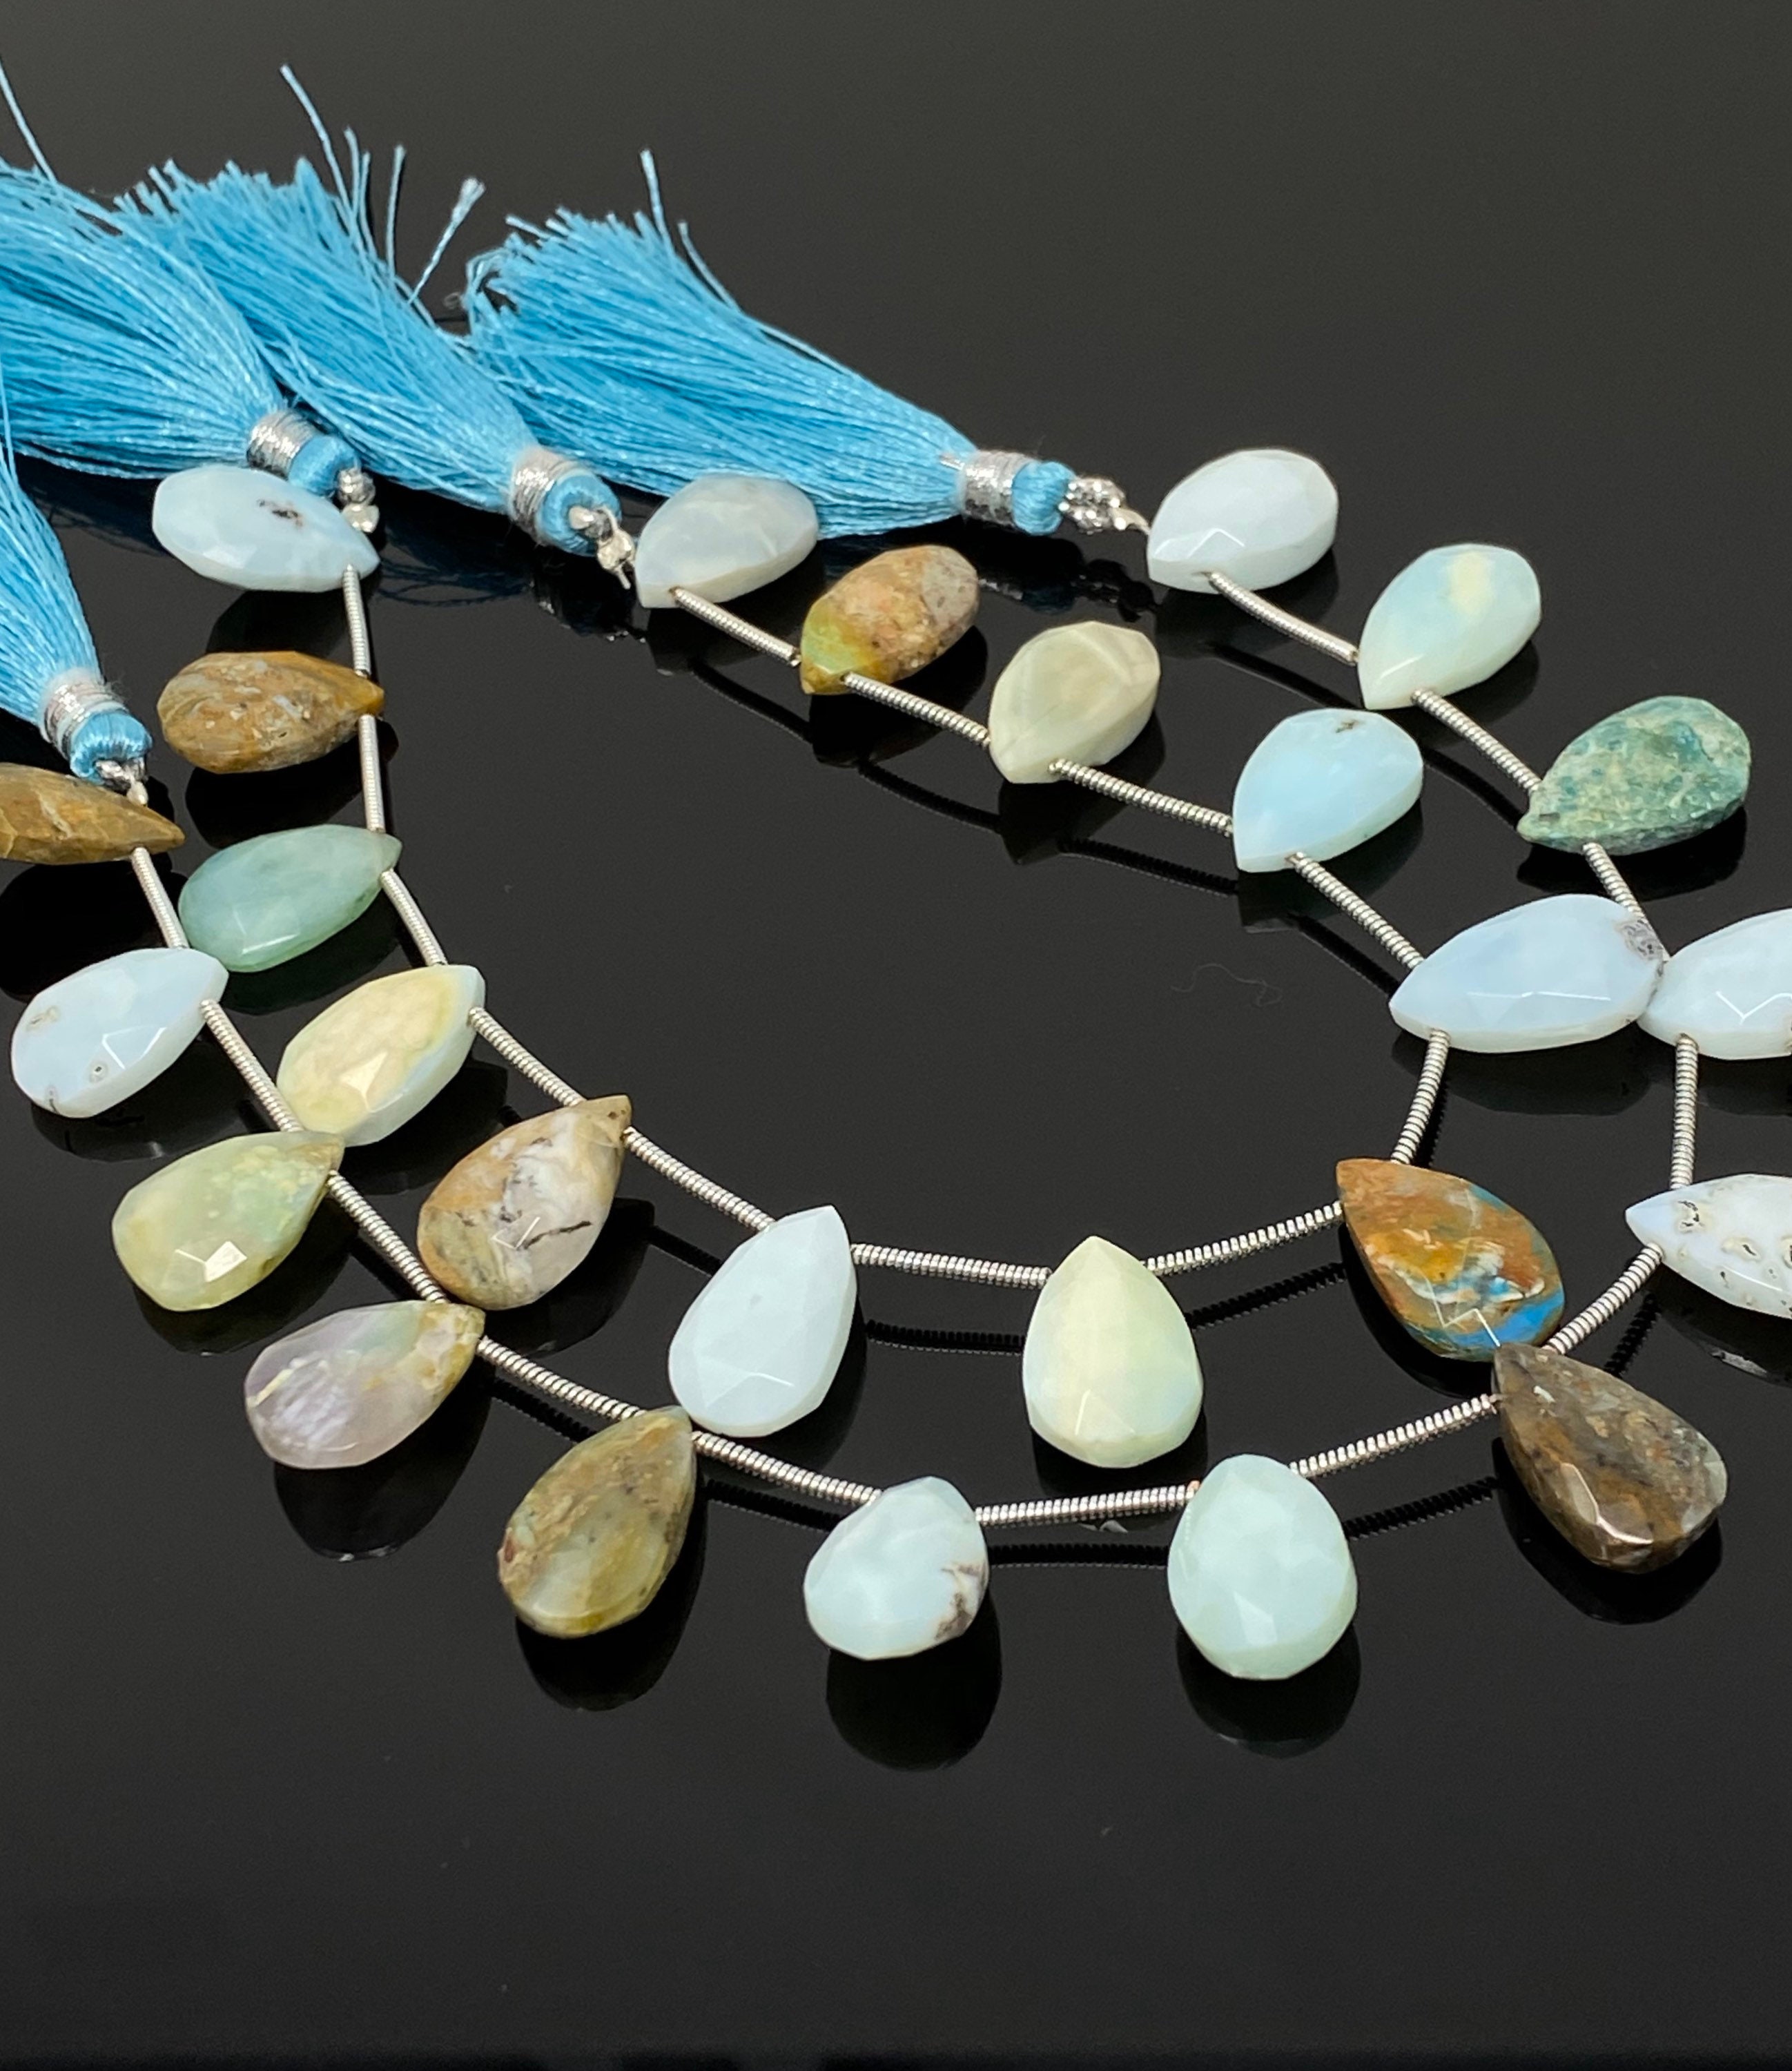 Natural Peridot Gemstone Beads, Genuine Gemstone Wholesale Beads